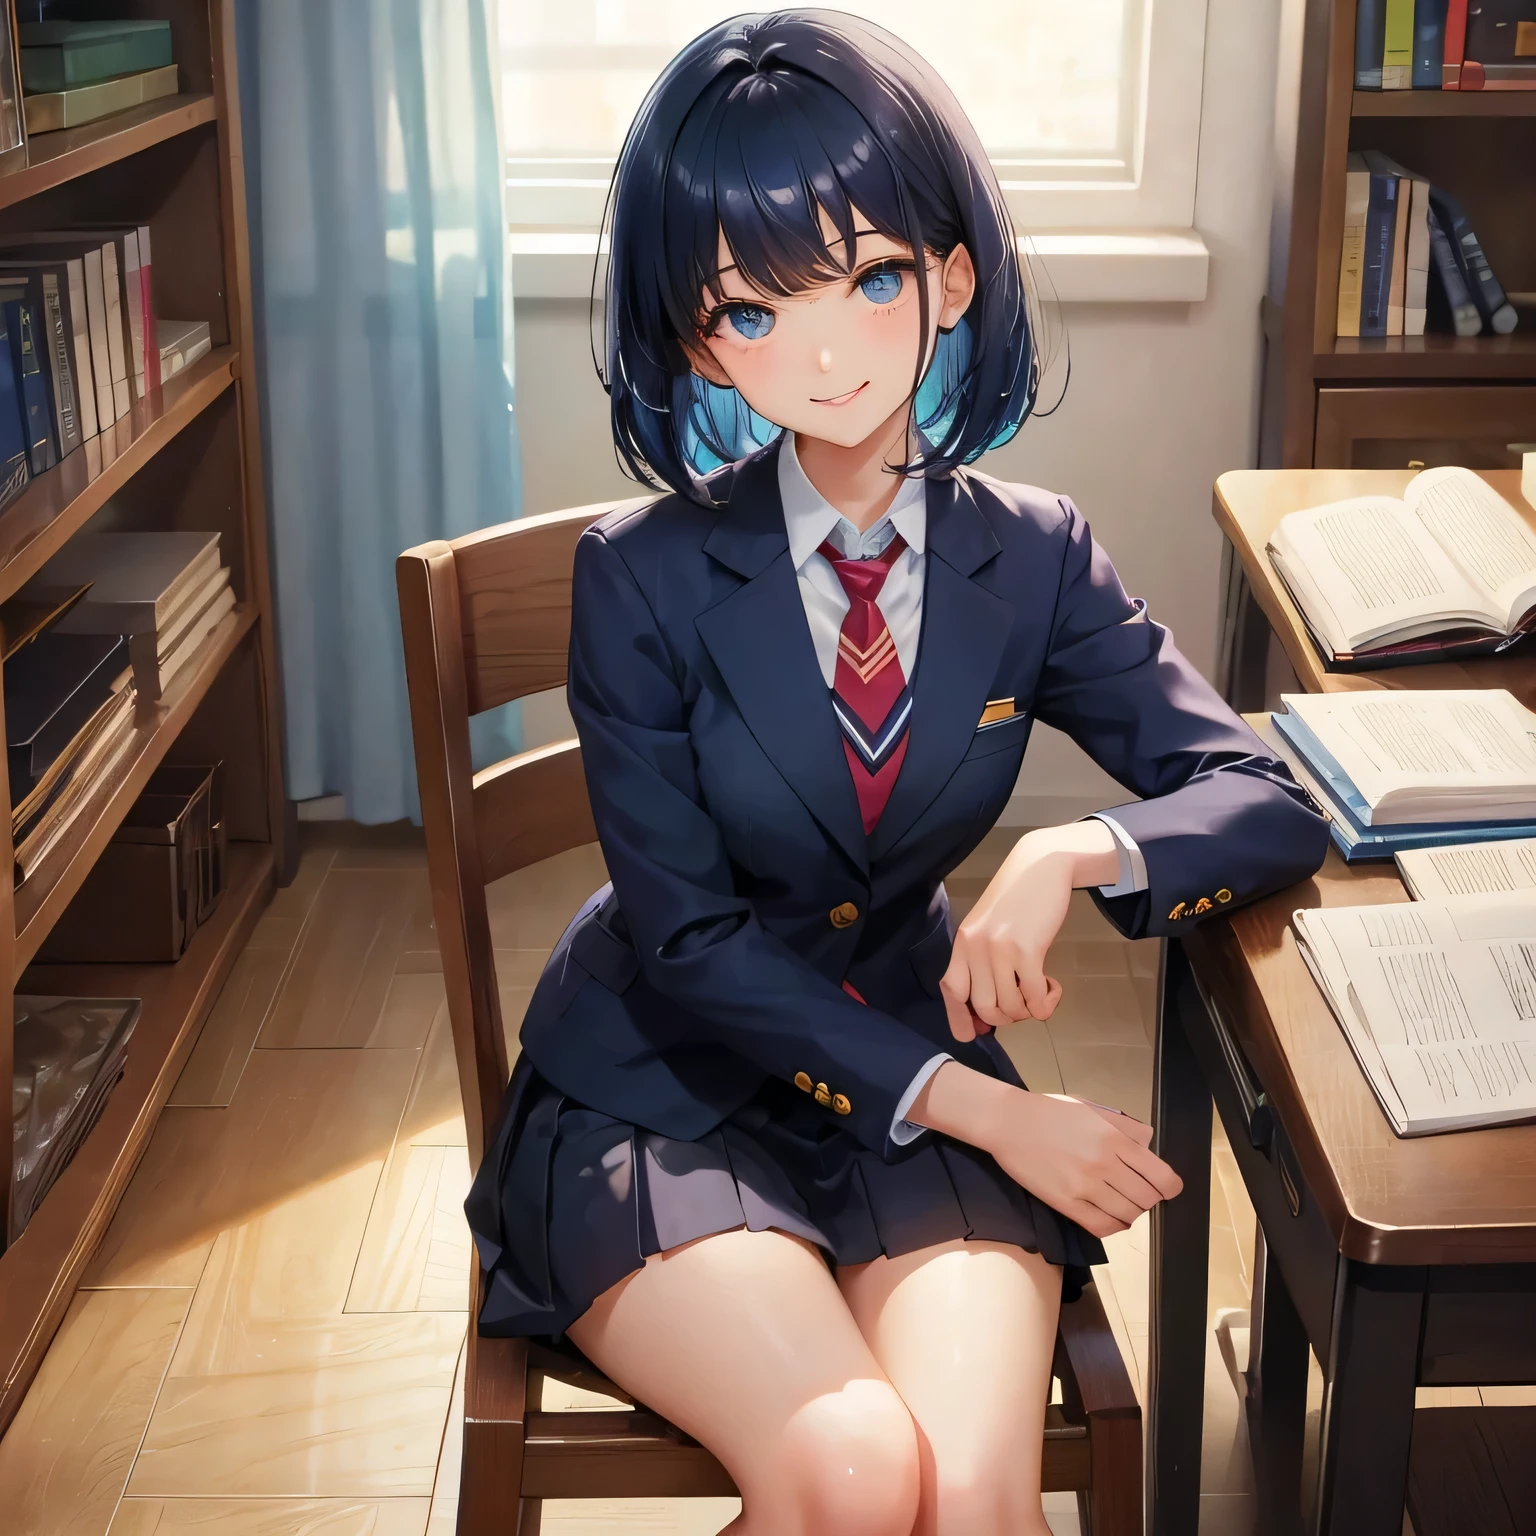 1 garota do ensino médio　sozinho　blazer　gravata　Cabelo Bob　cor de cabelo azul escuro　biblioteca　sorria gentilmente　sente-se em uma cadeira